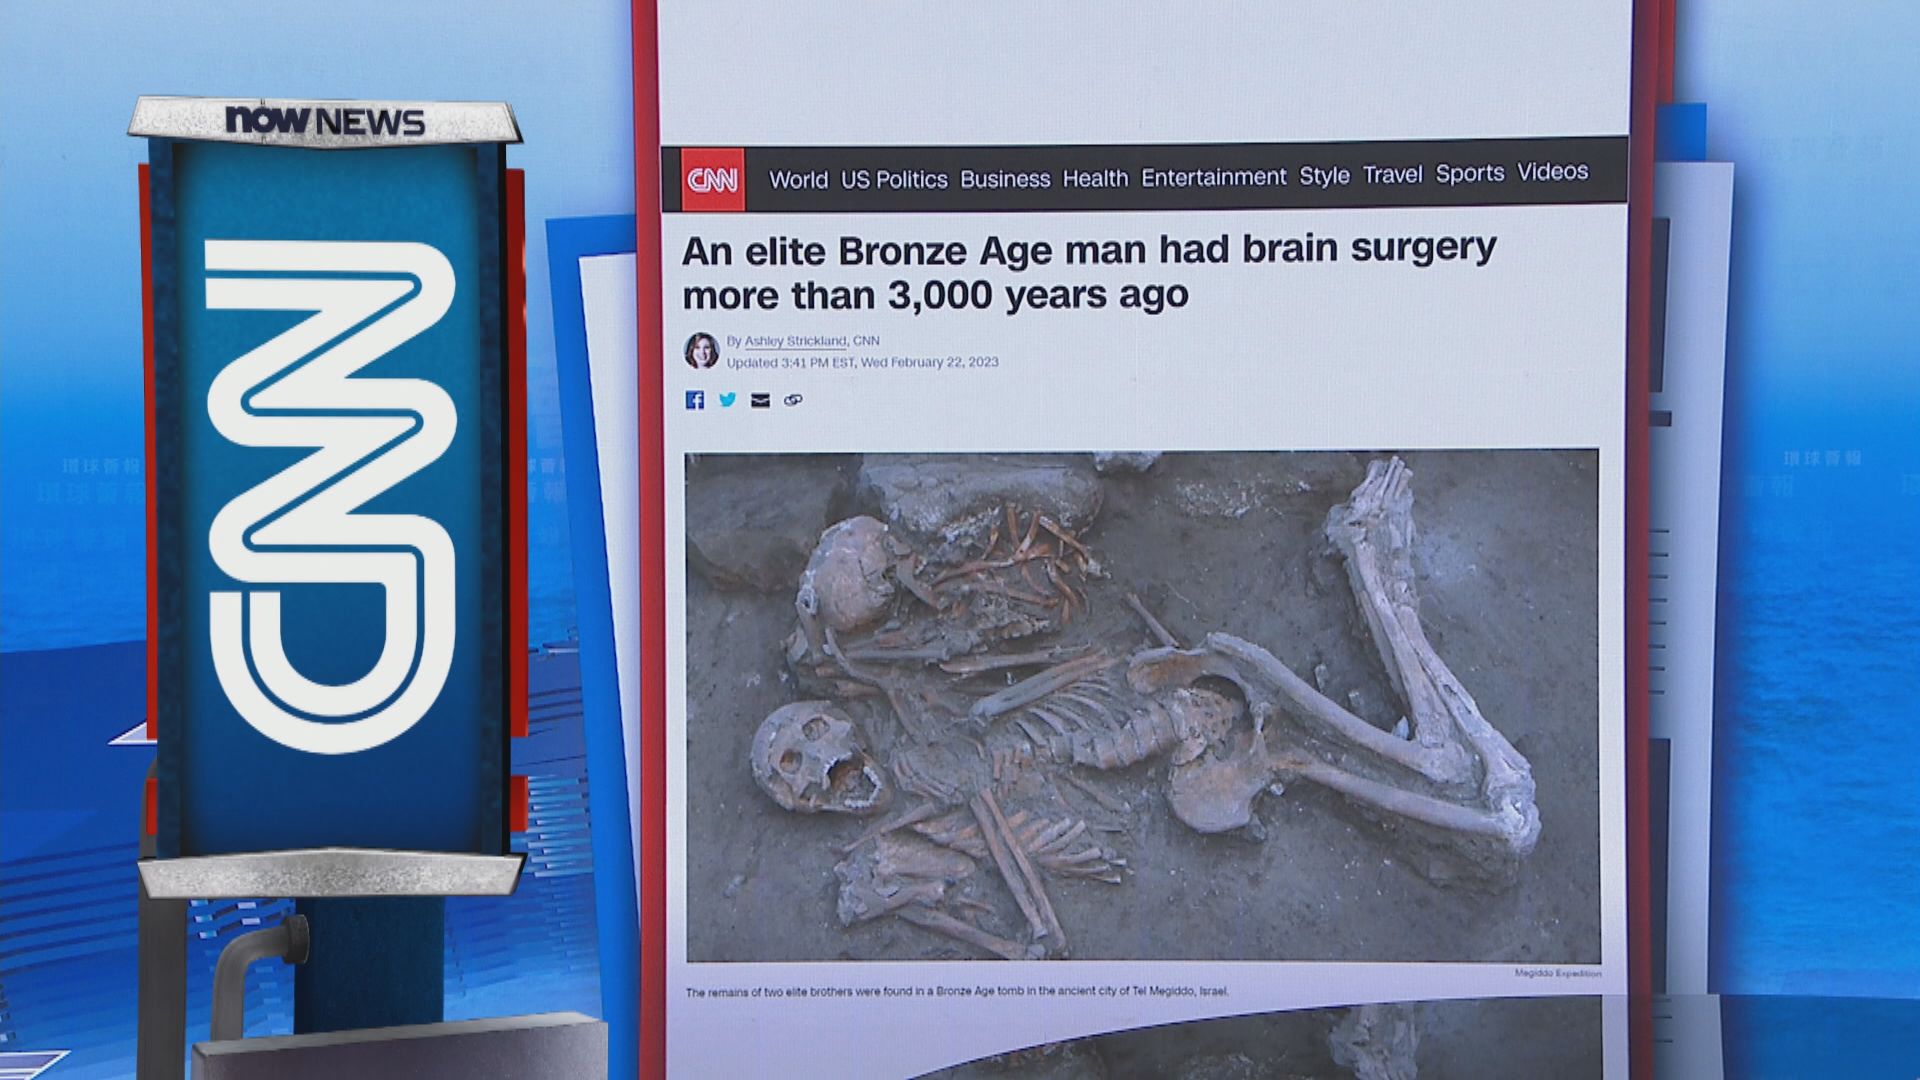 An elite Bronze Age man had brain surgery more than 3,000 years ago